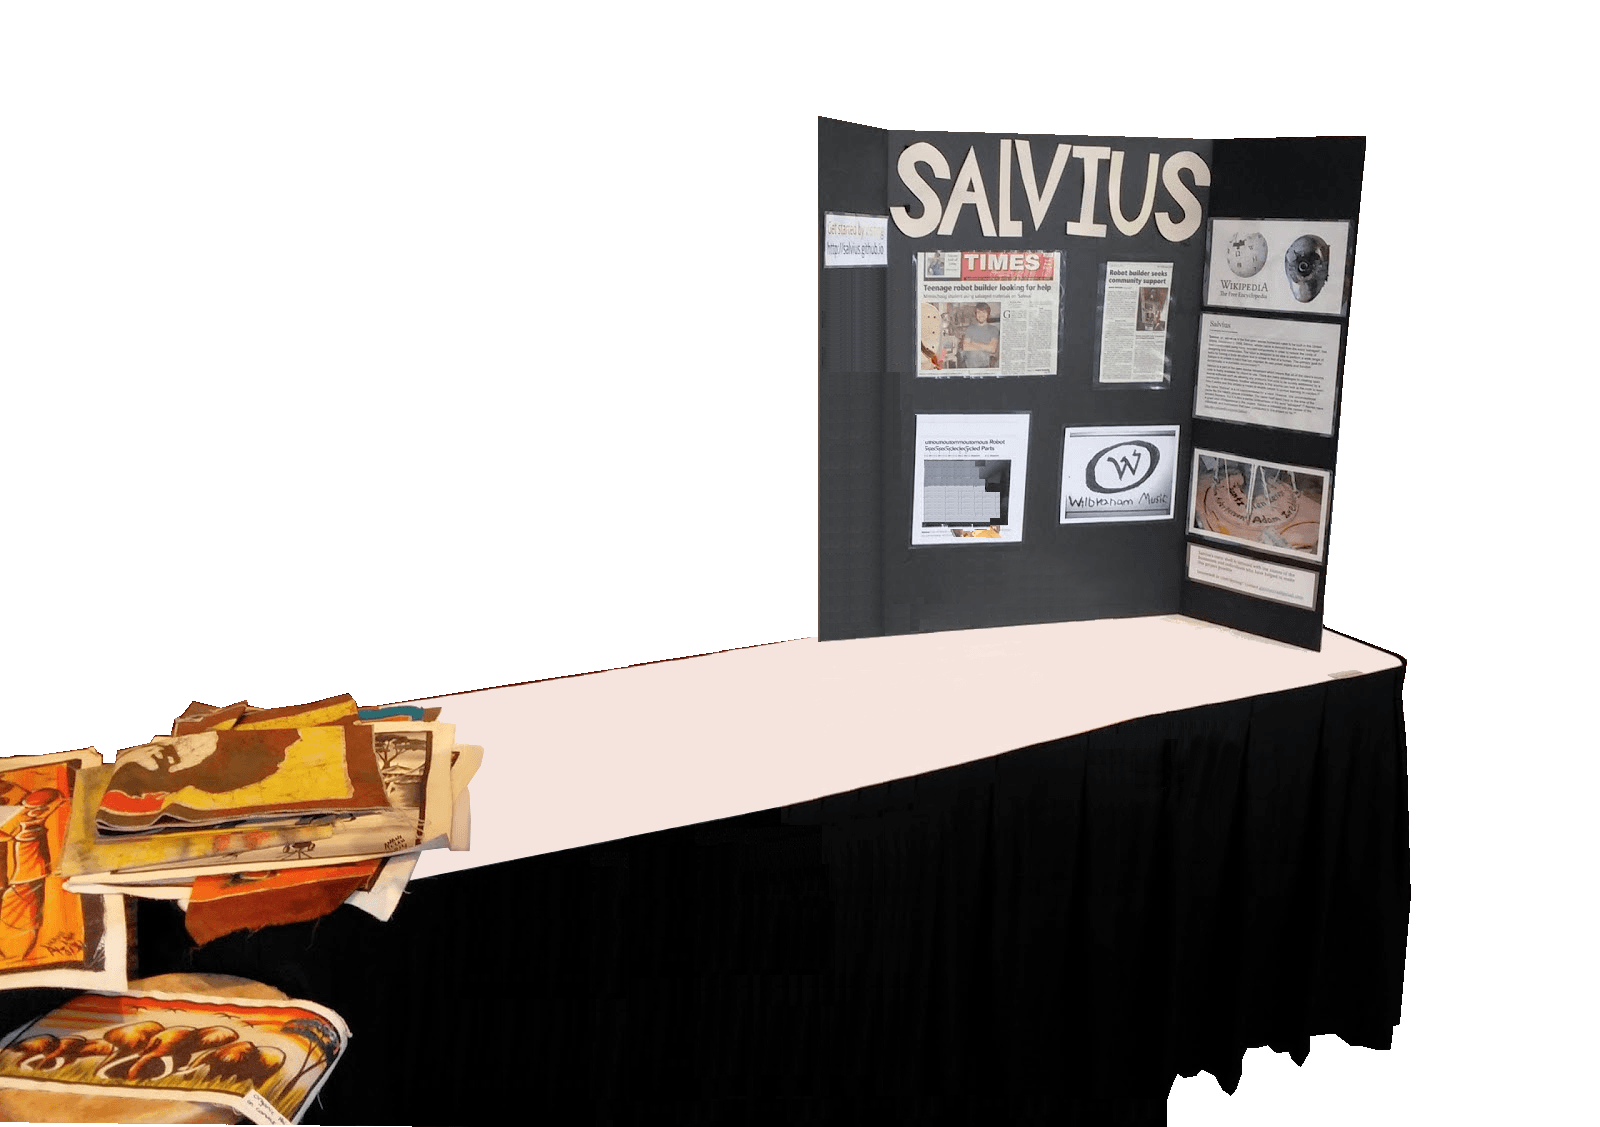 Salvius table